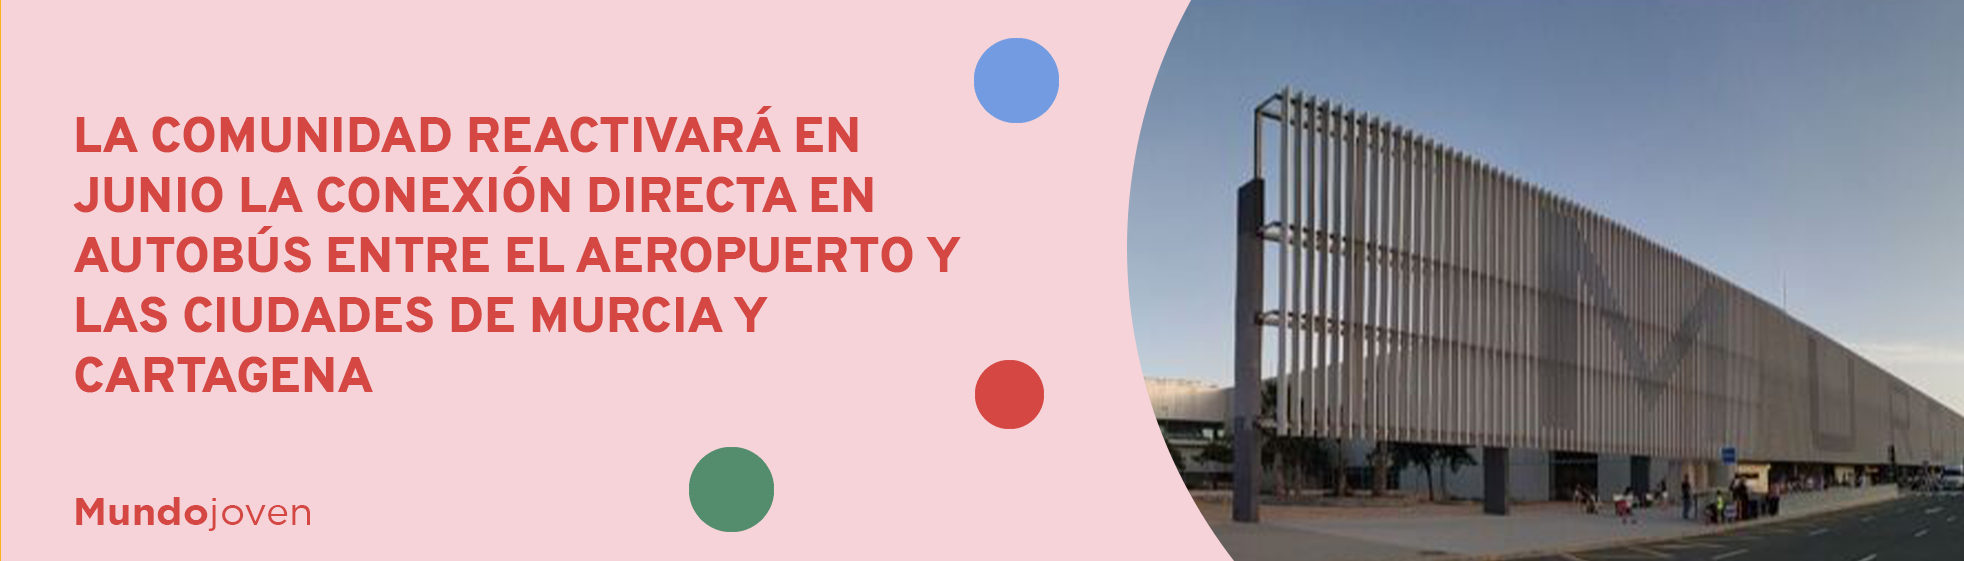 La Comunidad reactivará en junio la conexión directa en autobús entre el aeropuerto y las ciudades de Murcia y Cartagena